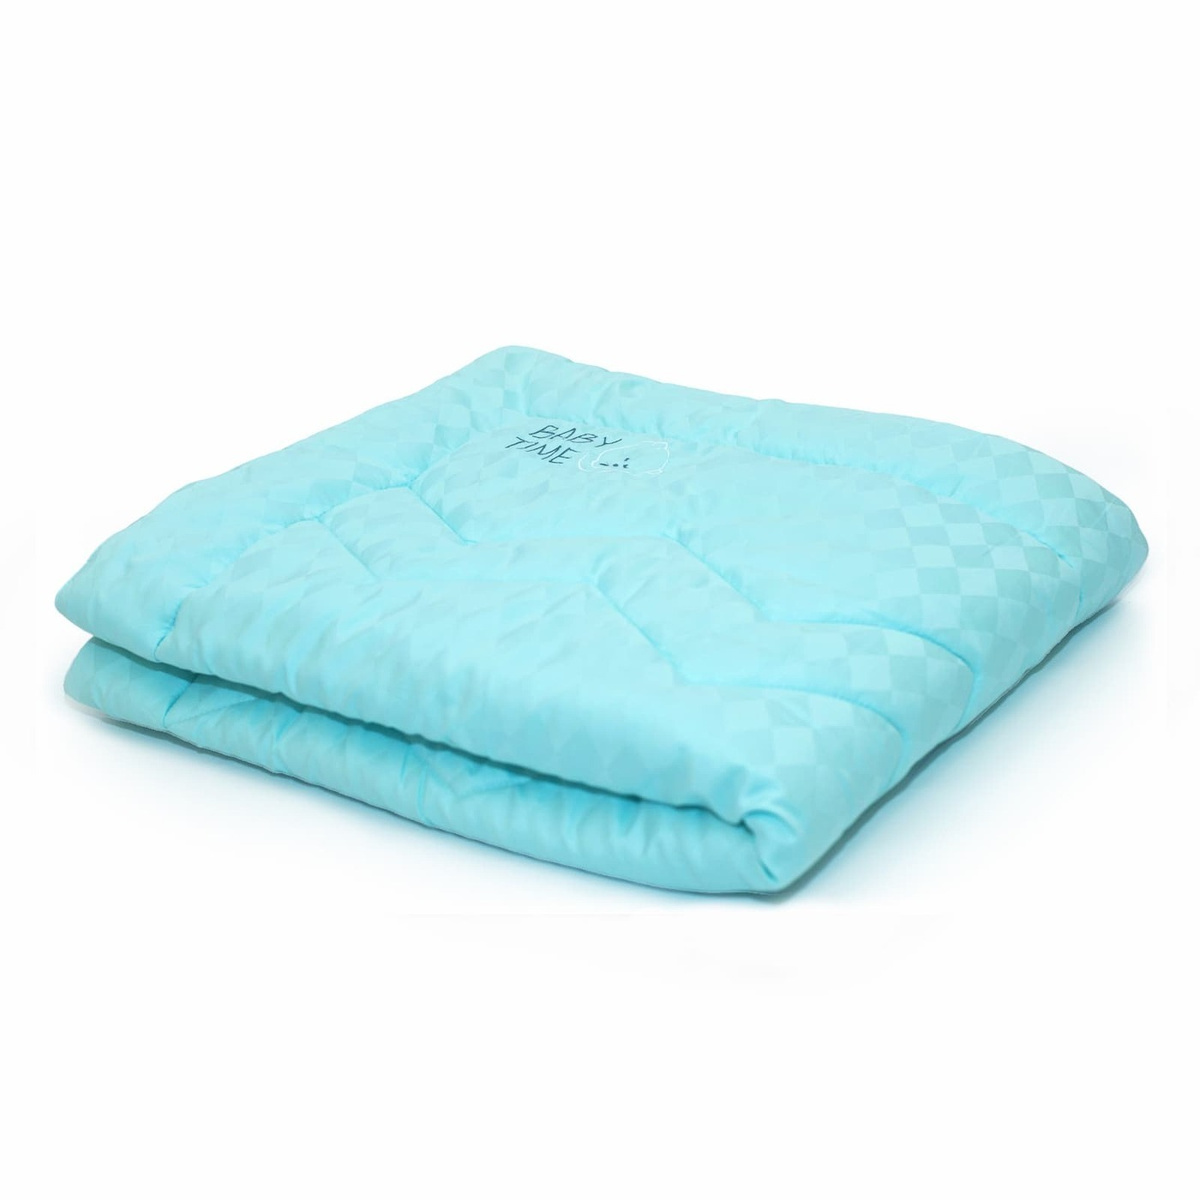 Купить Одеяло В Интернет Магазине Озон